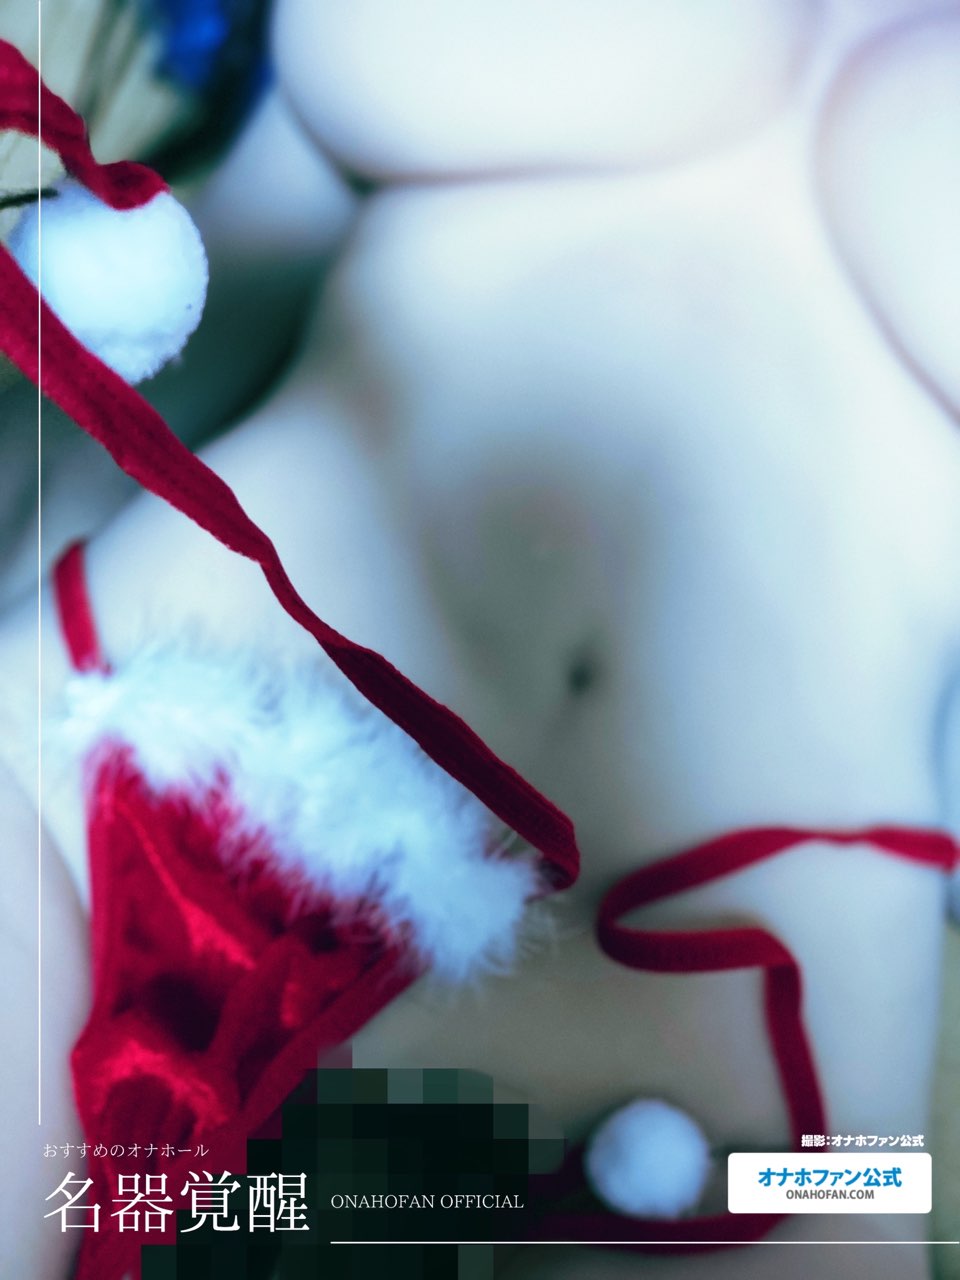 クリスマスコスでハンドオナホの『名器覚醒』をラブドールに装着して着衣セックスしてみた8